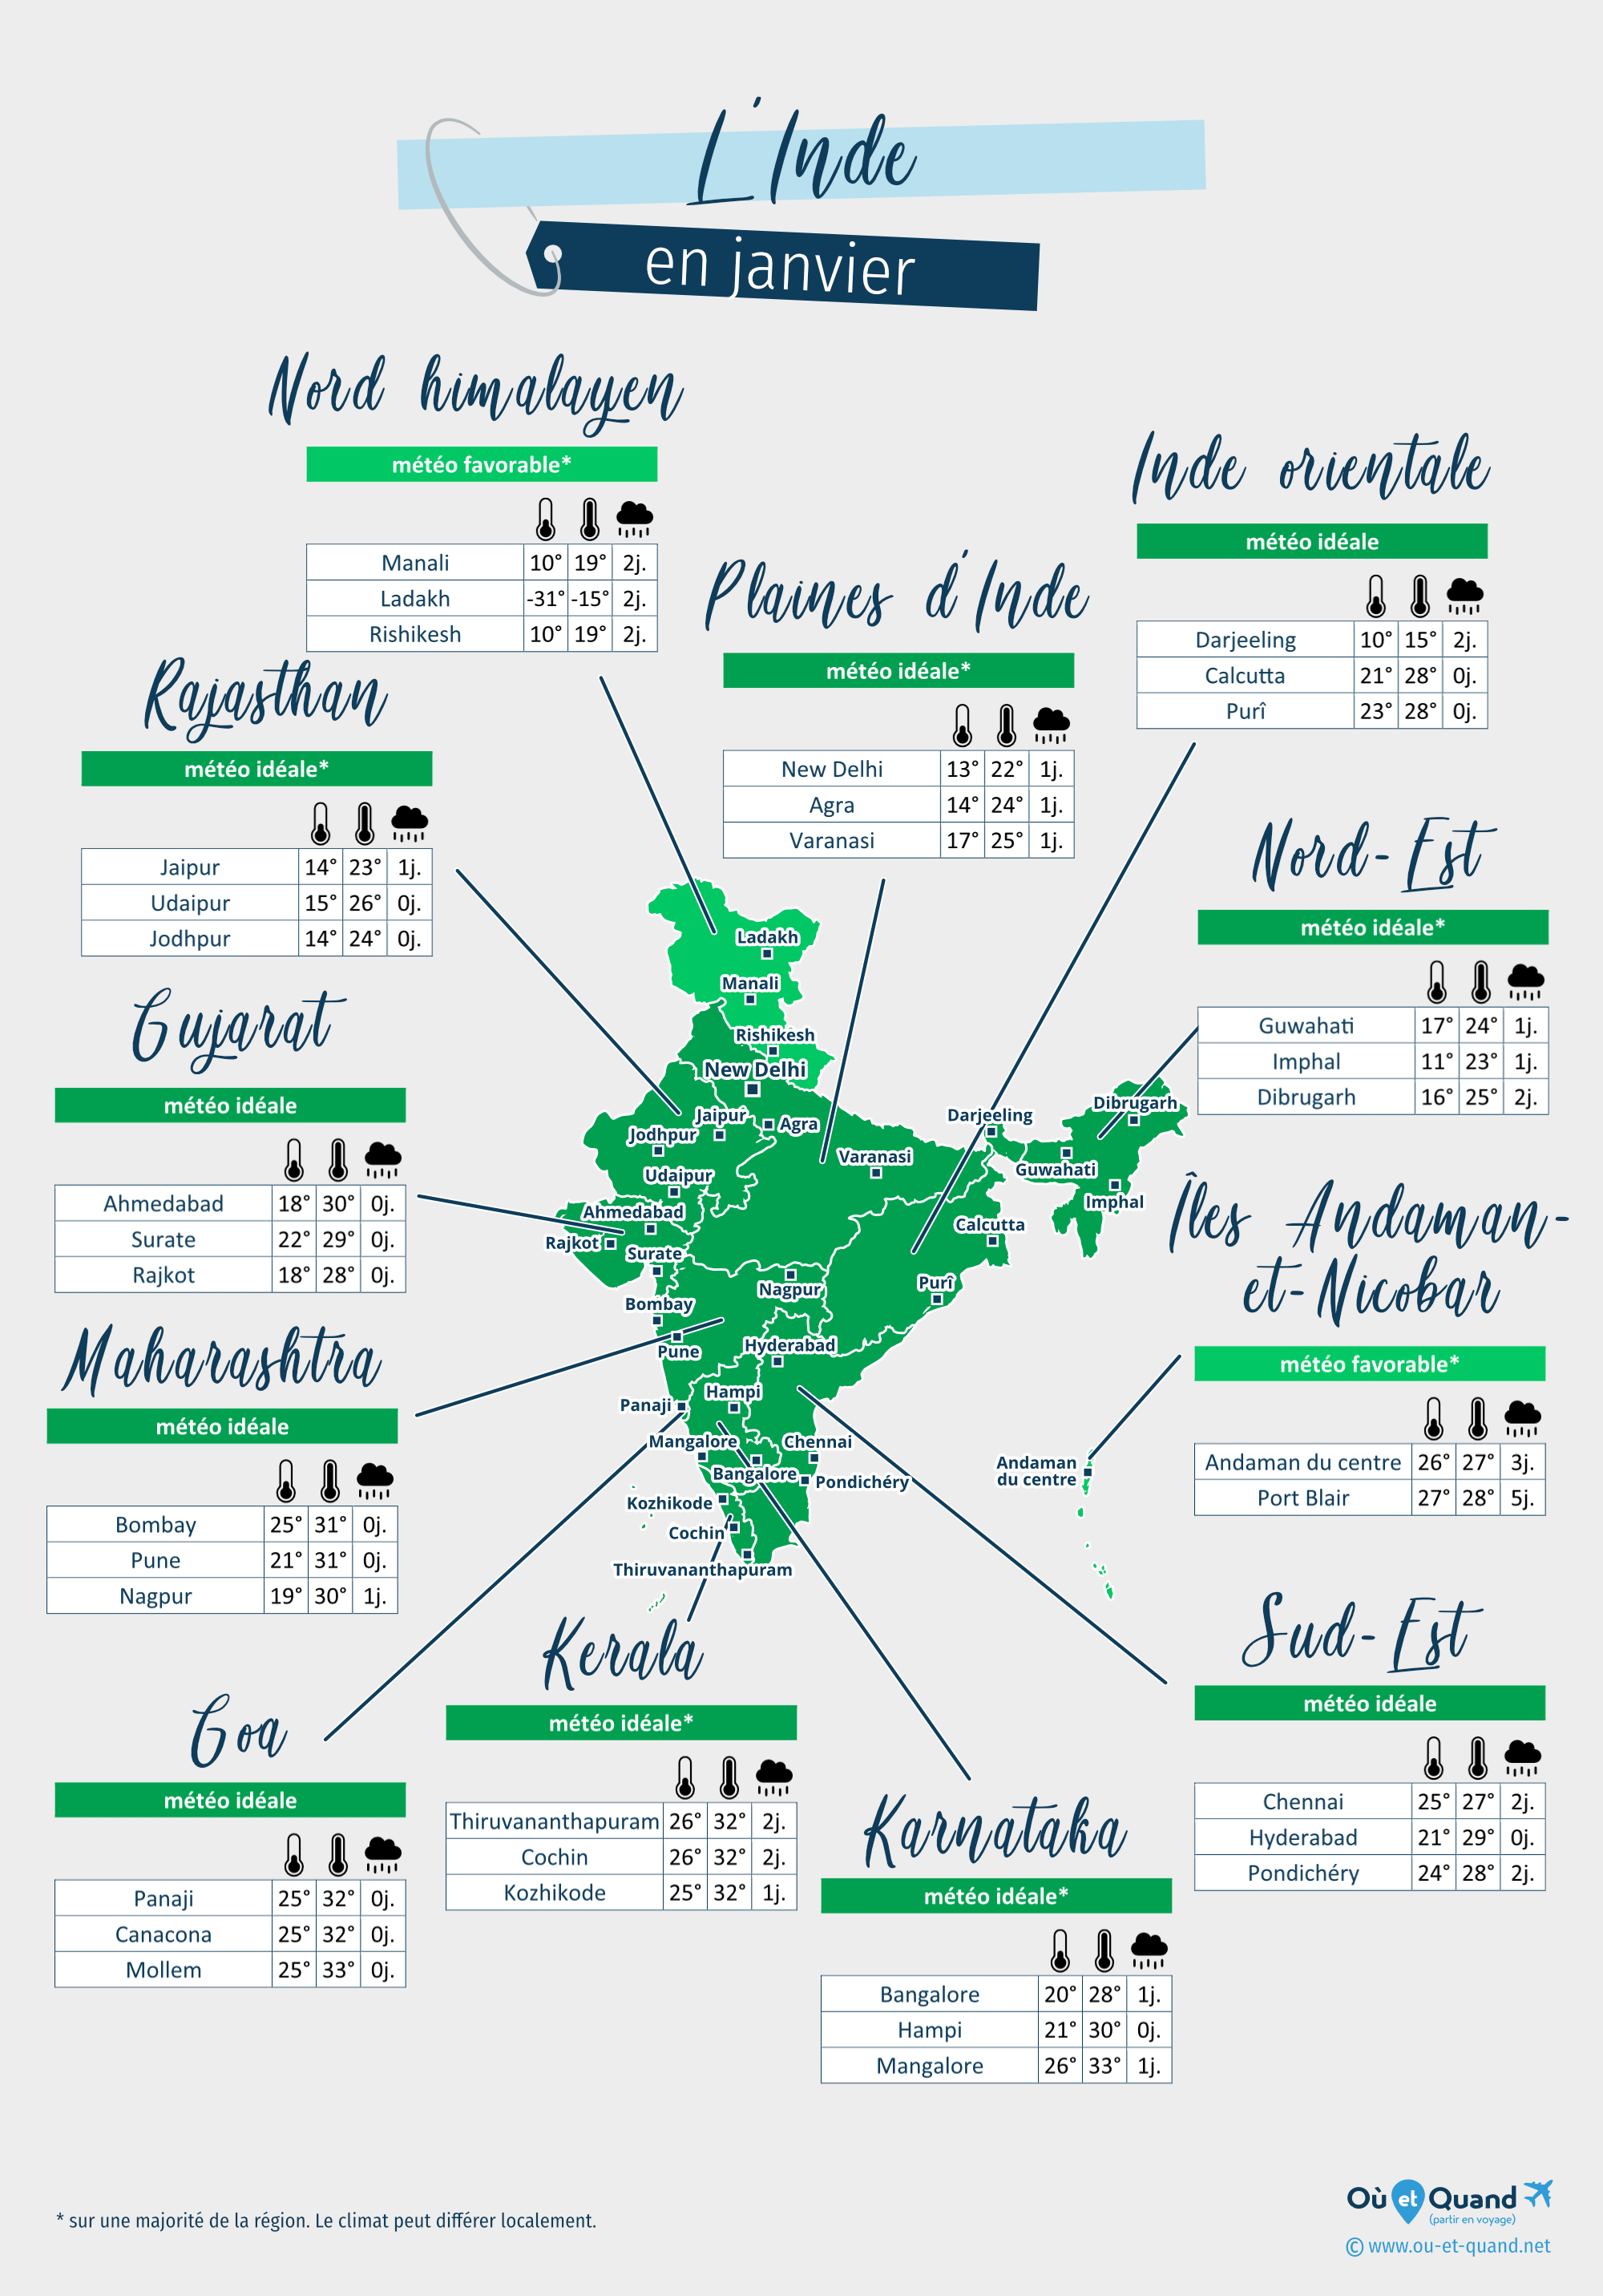 Carte de la météo en janvier dans les régions de l'Inde